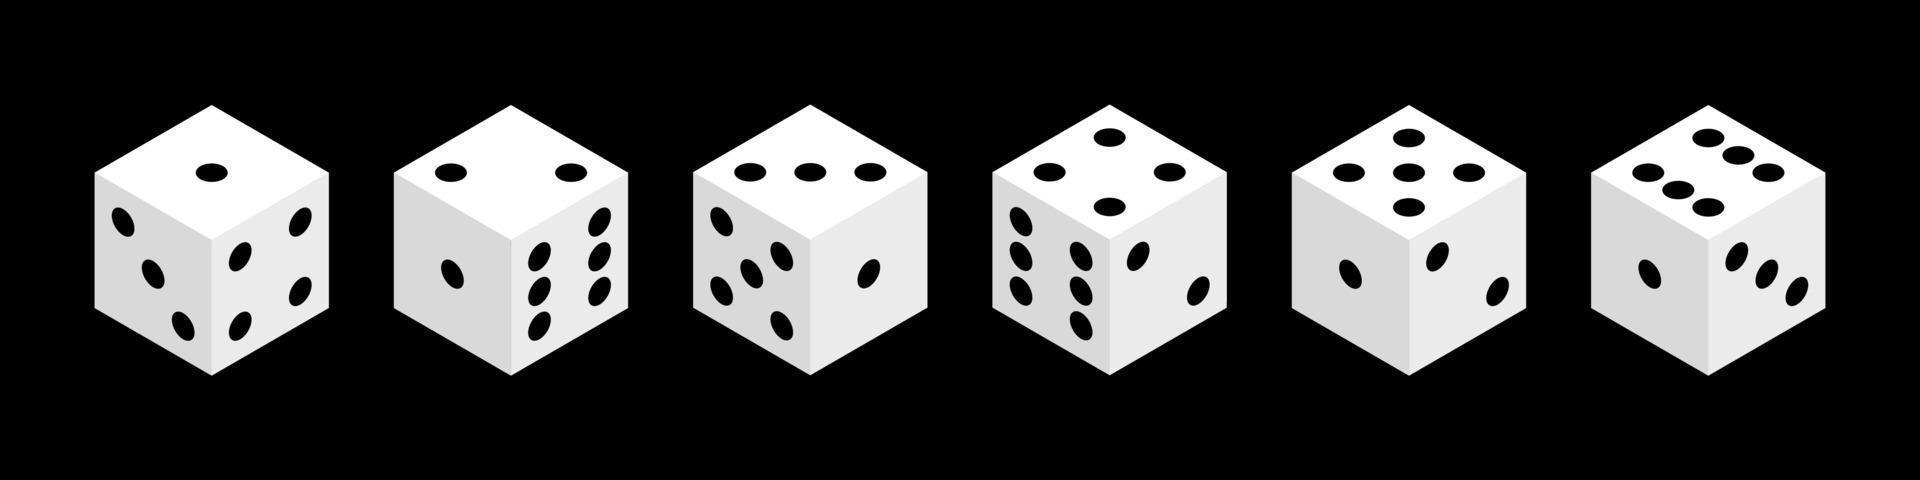 dado isolato isometrico vettore oggetti. realistico bianca cubi con casuale numeri di nero puntini o pip. concetto di gioco d'azzardo Giochi disegno, casinò, craps e poker, tavolo o tavola Giochi.